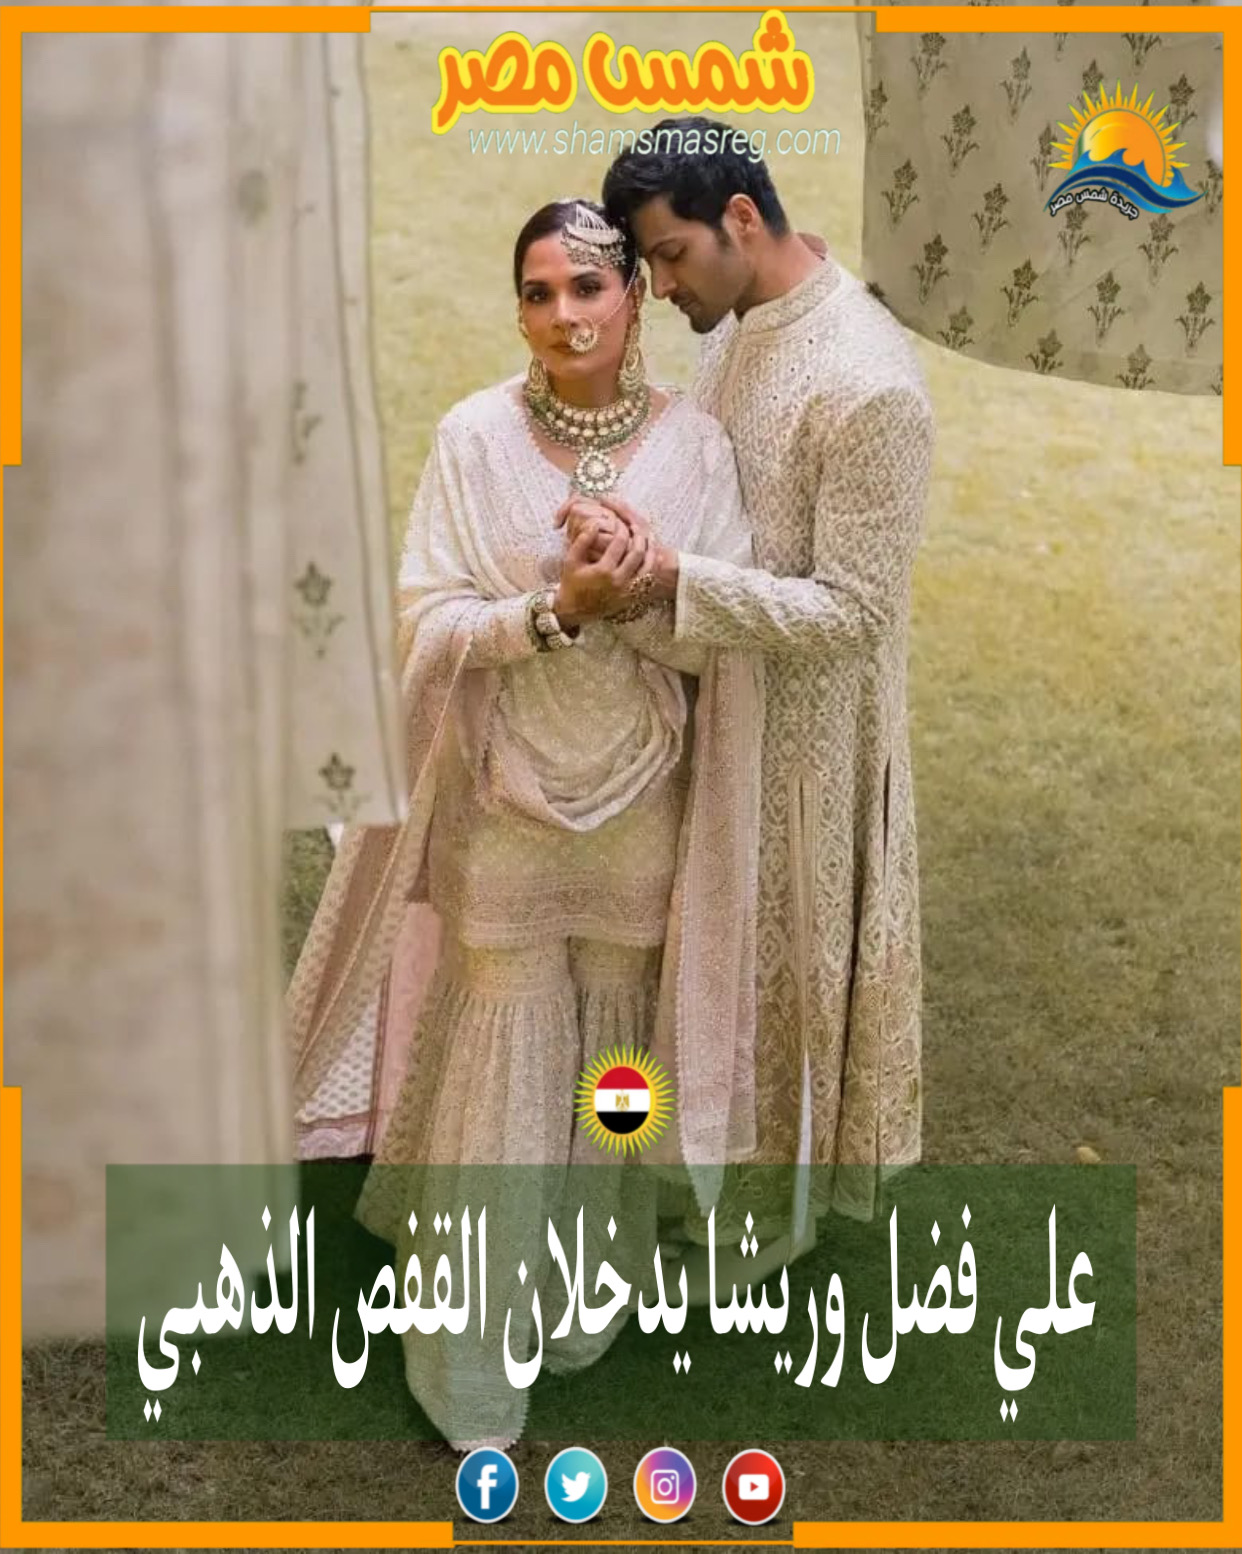 |شمس مصر| علي فضل وريشا تشادها يدخلان القفص الذهبي